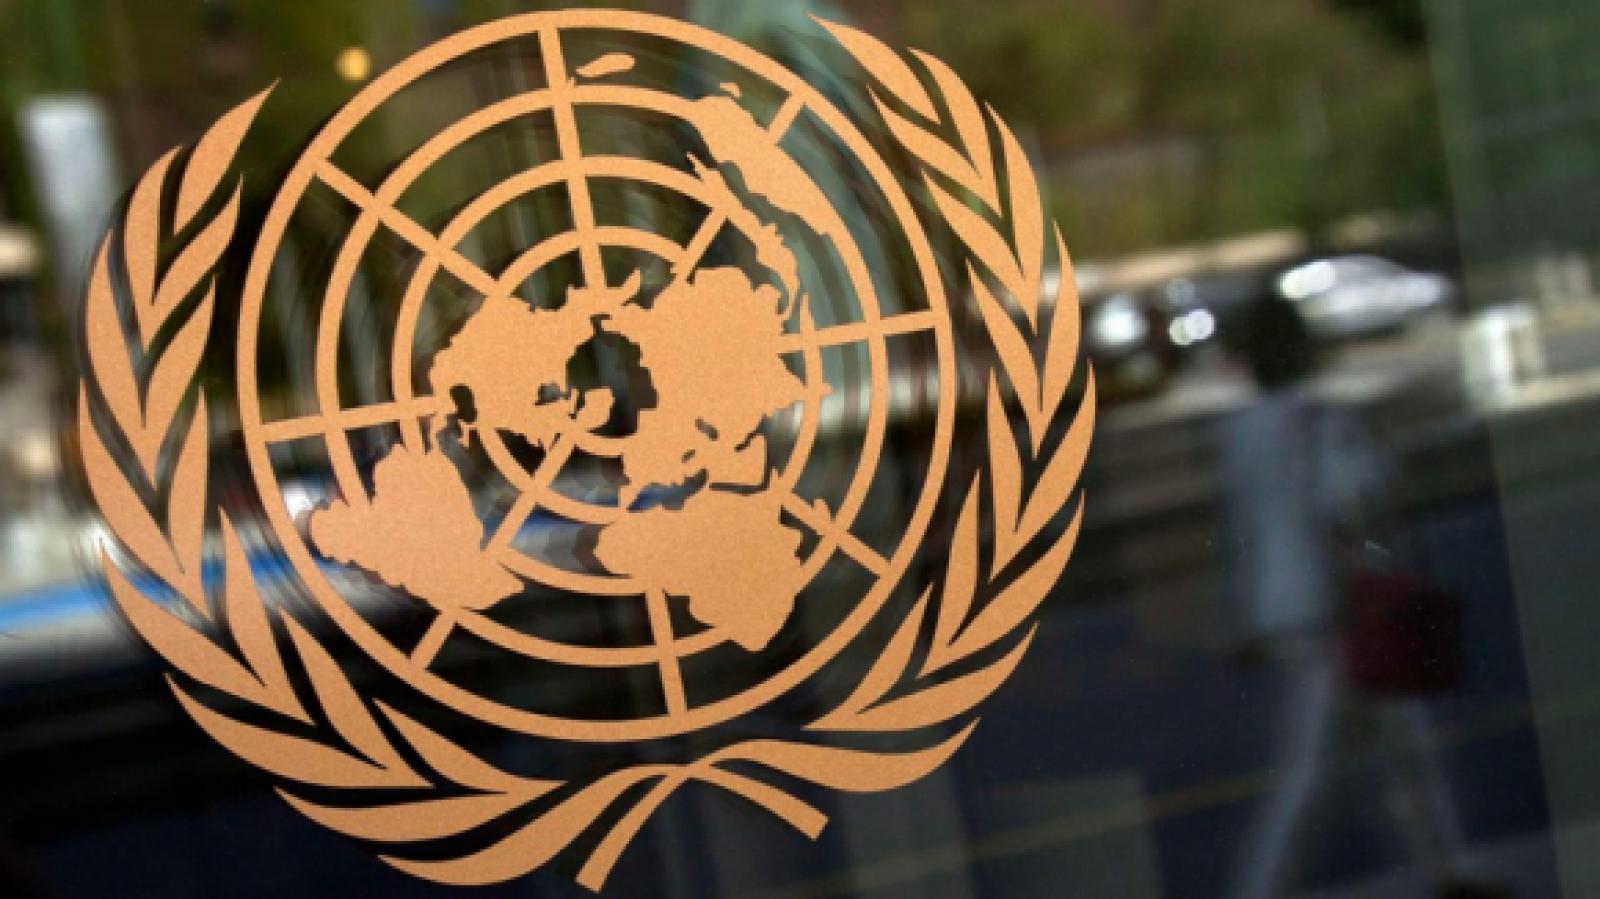 Генассамблея ООН приняла резолюцию о правах человека в Крыму